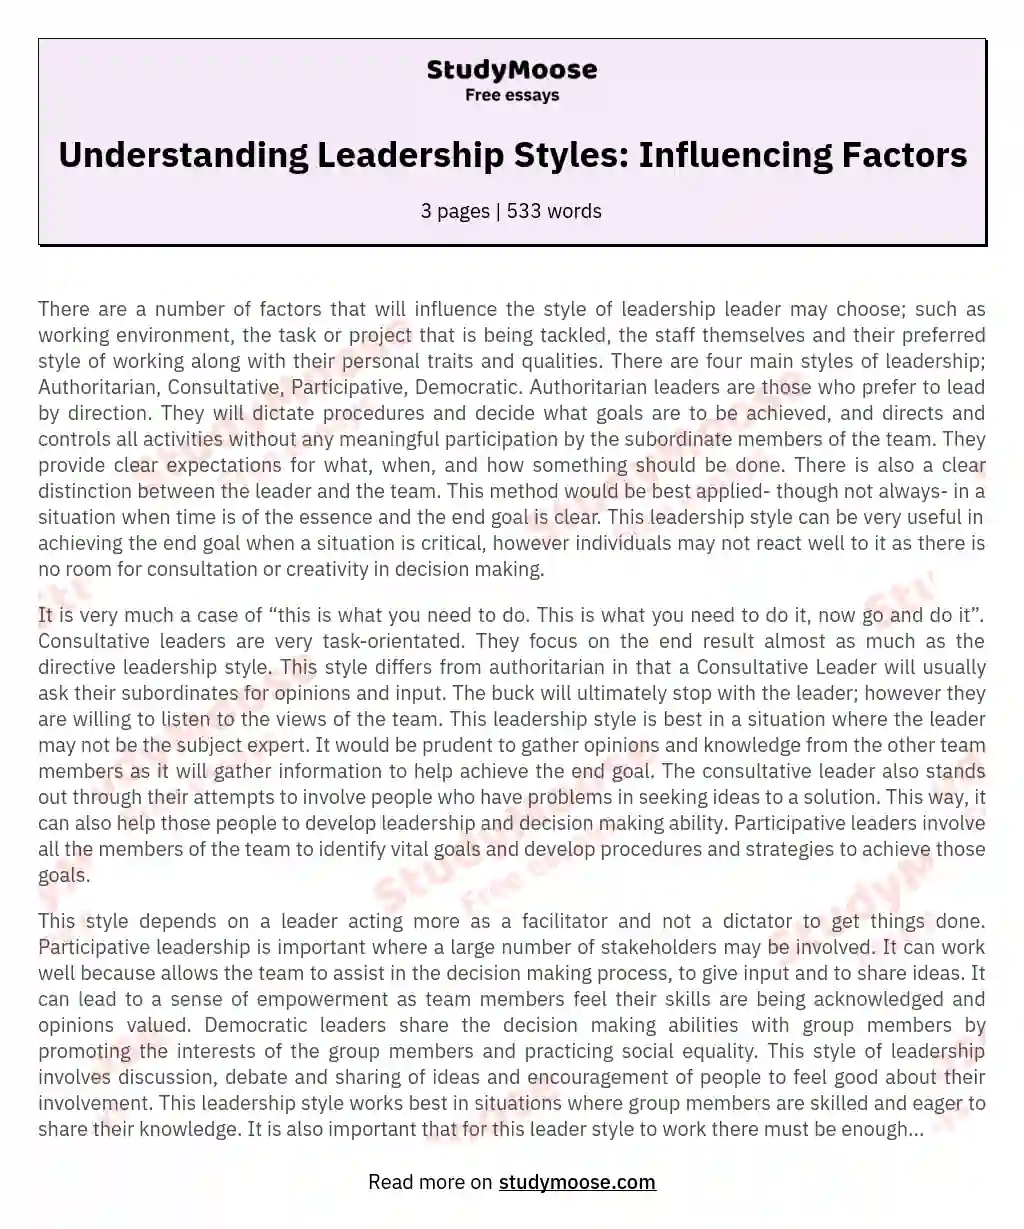 Understanding Leadership Styles: Influencing Factors